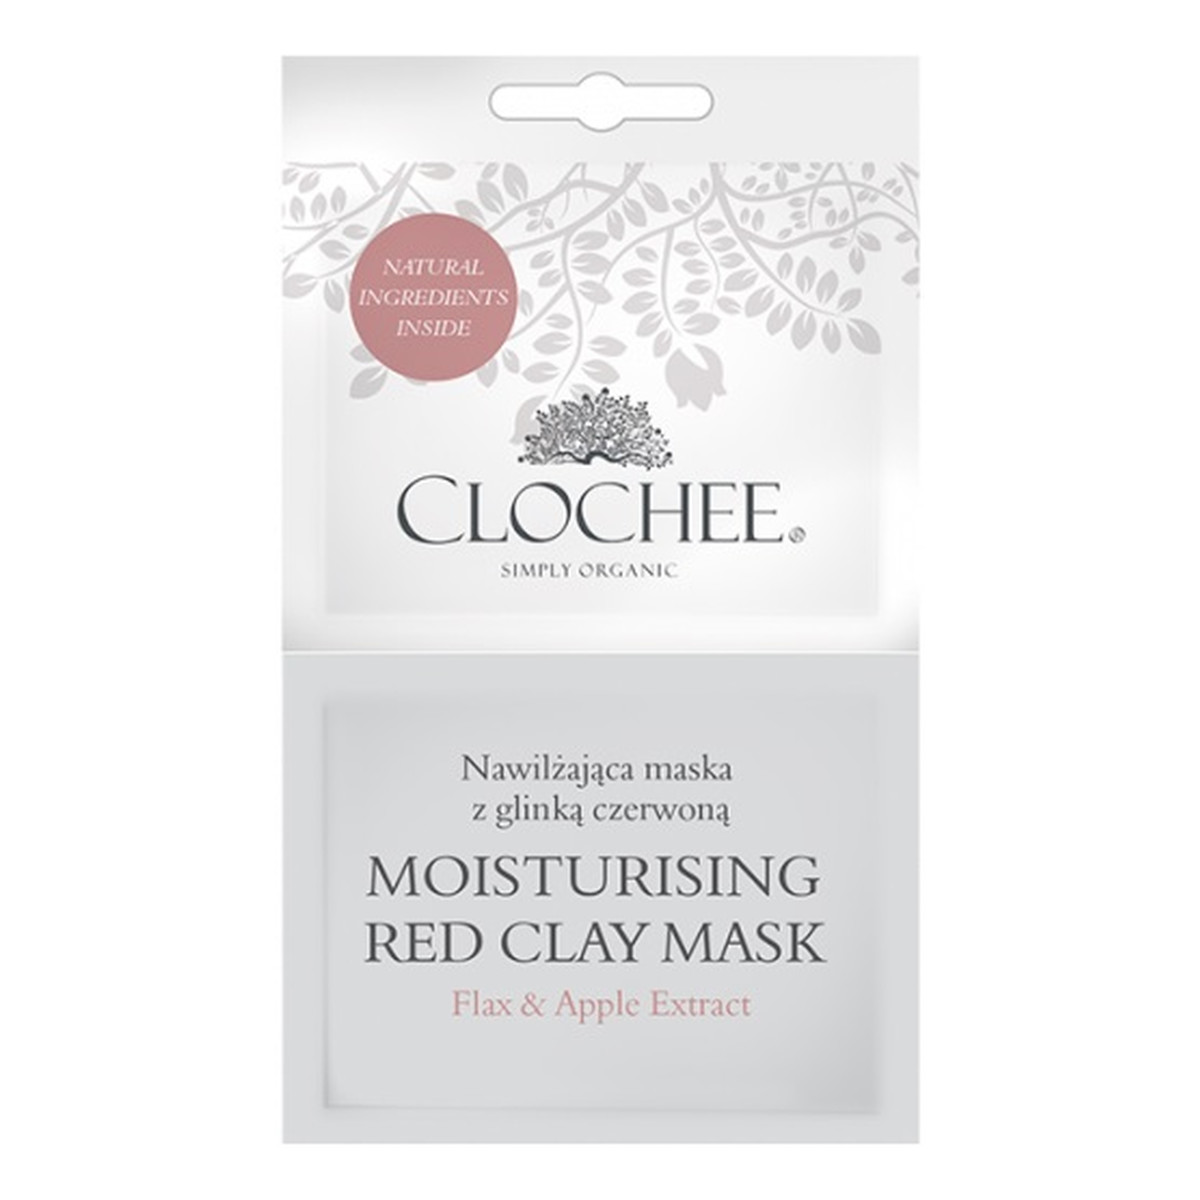 Clochee nawilżająca maska z glinką czerwoną 2x6ml 6ml